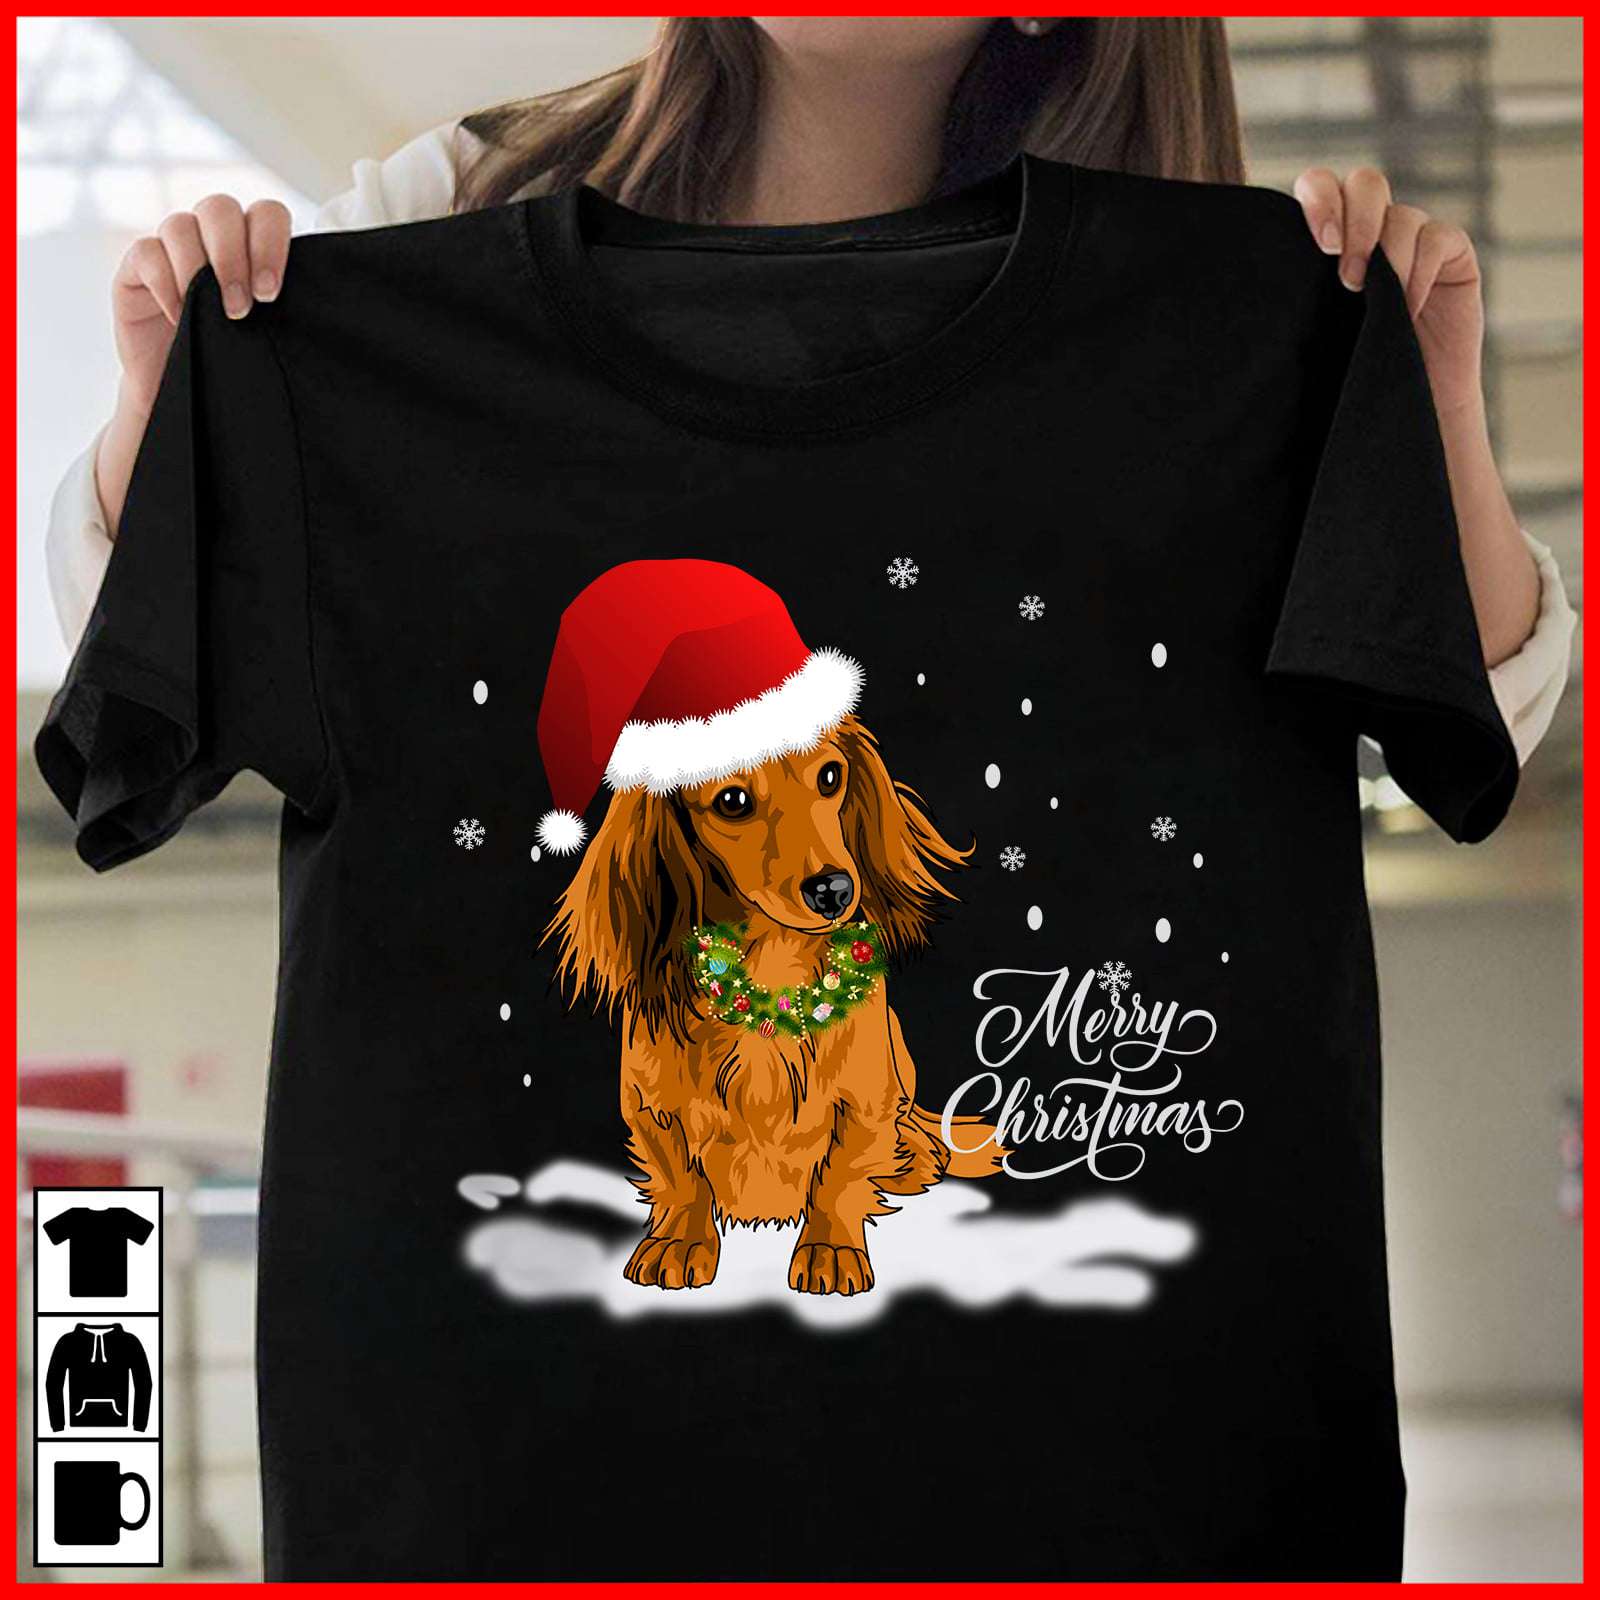 Merry Christmas - Dachshund dog Christmas costume, Gift for Christmas day